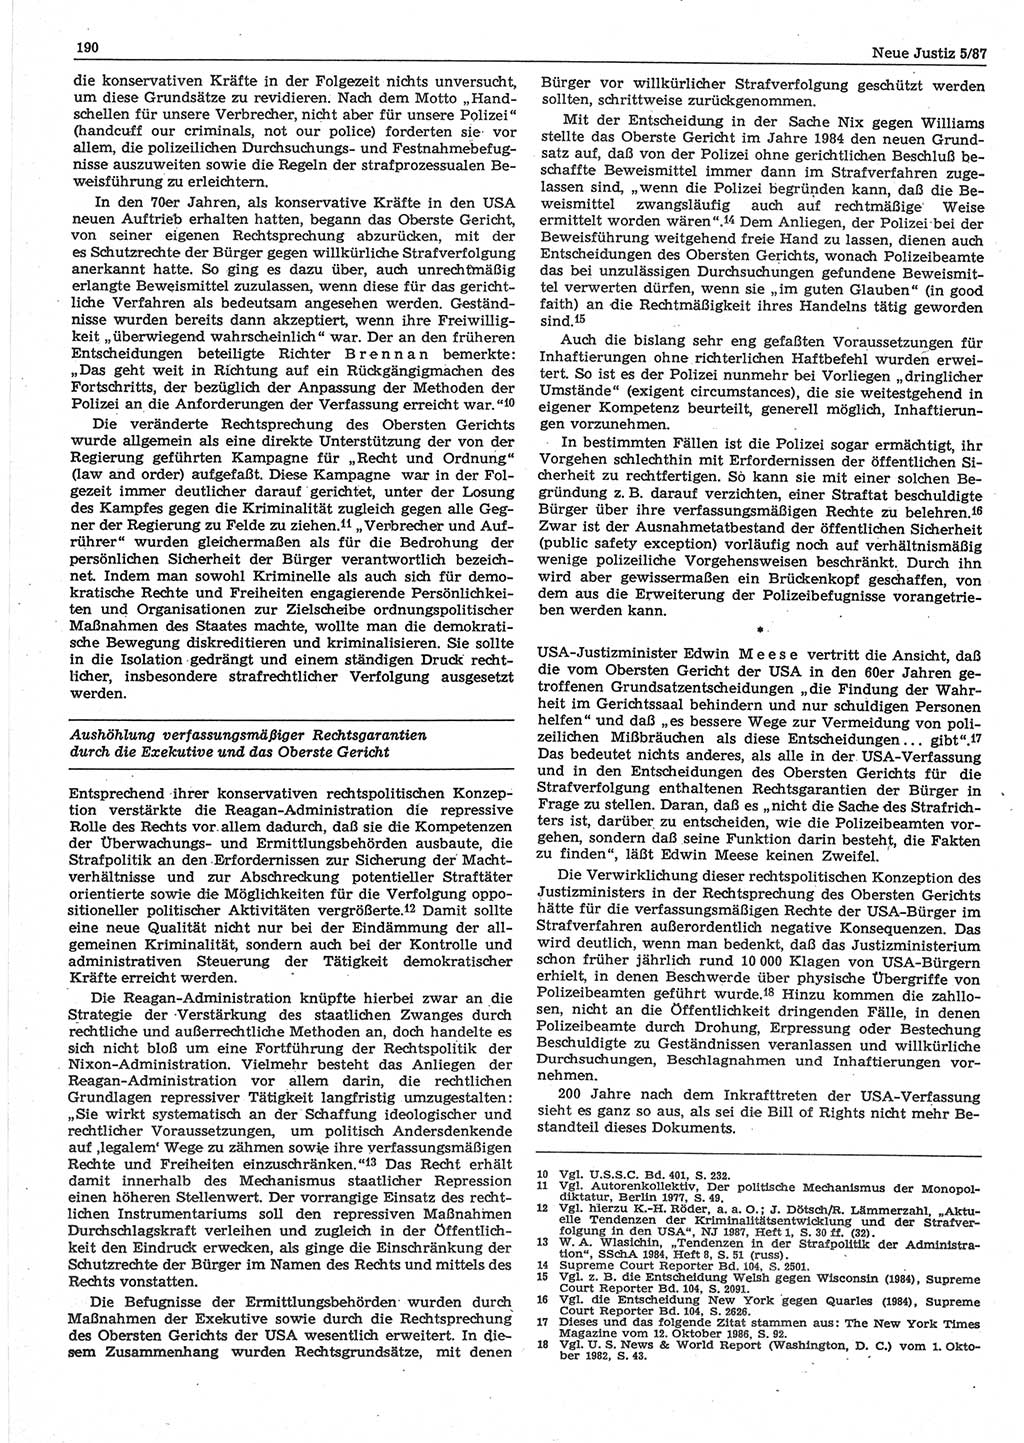 Neue Justiz (NJ), Zeitschrift für sozialistisches Recht und Gesetzlichkeit [Deutsche Demokratische Republik (DDR)], 41. Jahrgang 1987, Seite 190 (NJ DDR 1987, S. 190)